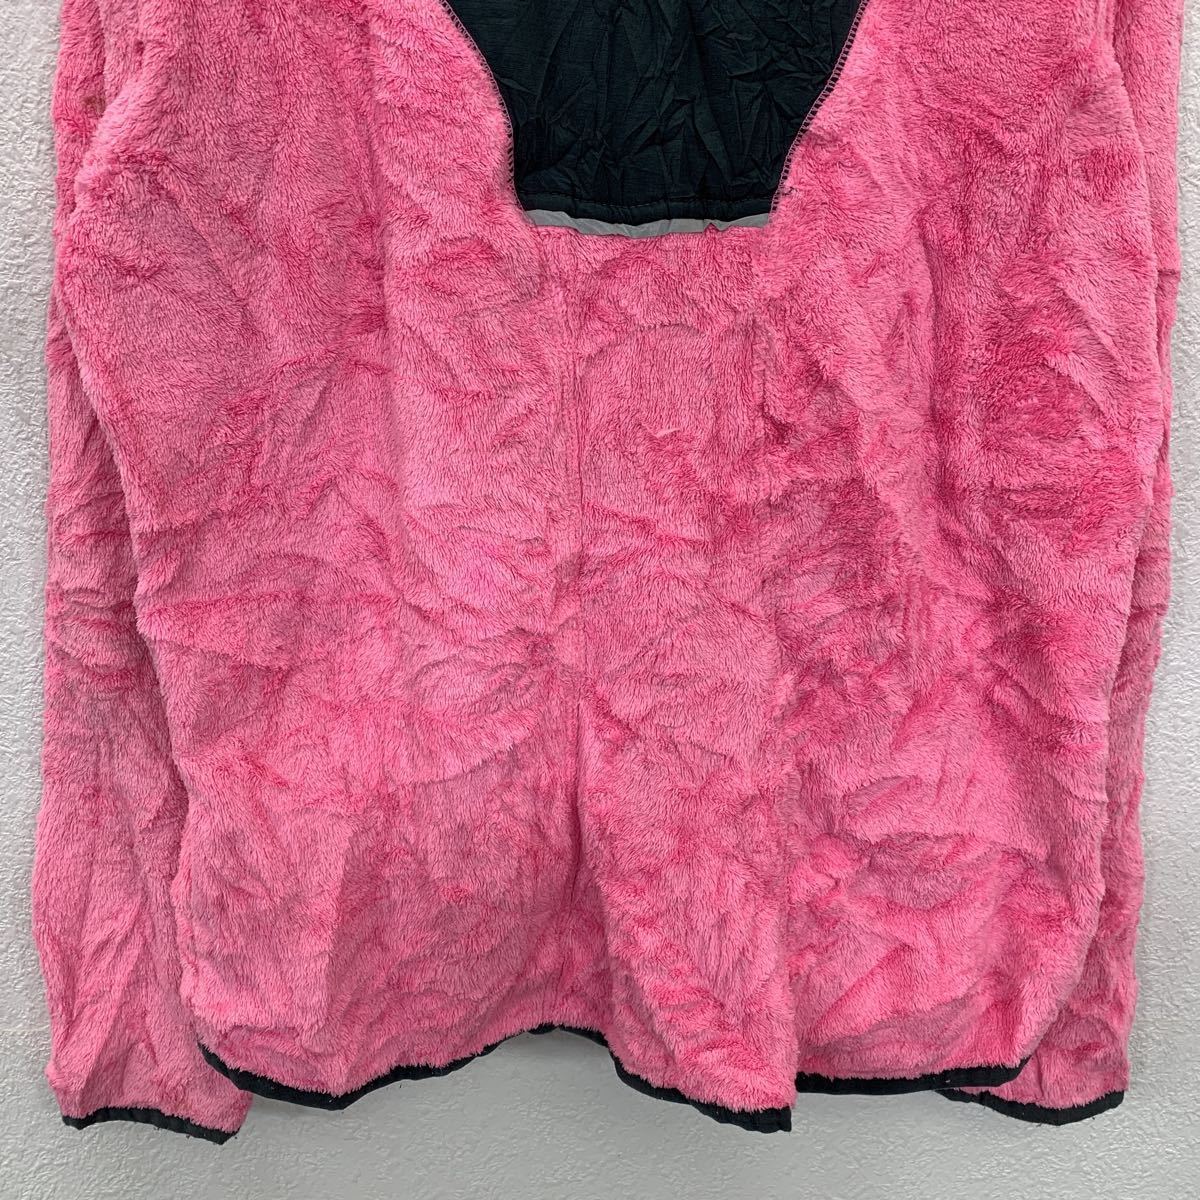 UMBRO ... подъём ... венок   пиджак   женский  L размер   ...  розовый   бу одежда ...  Америка ... t2201-3572